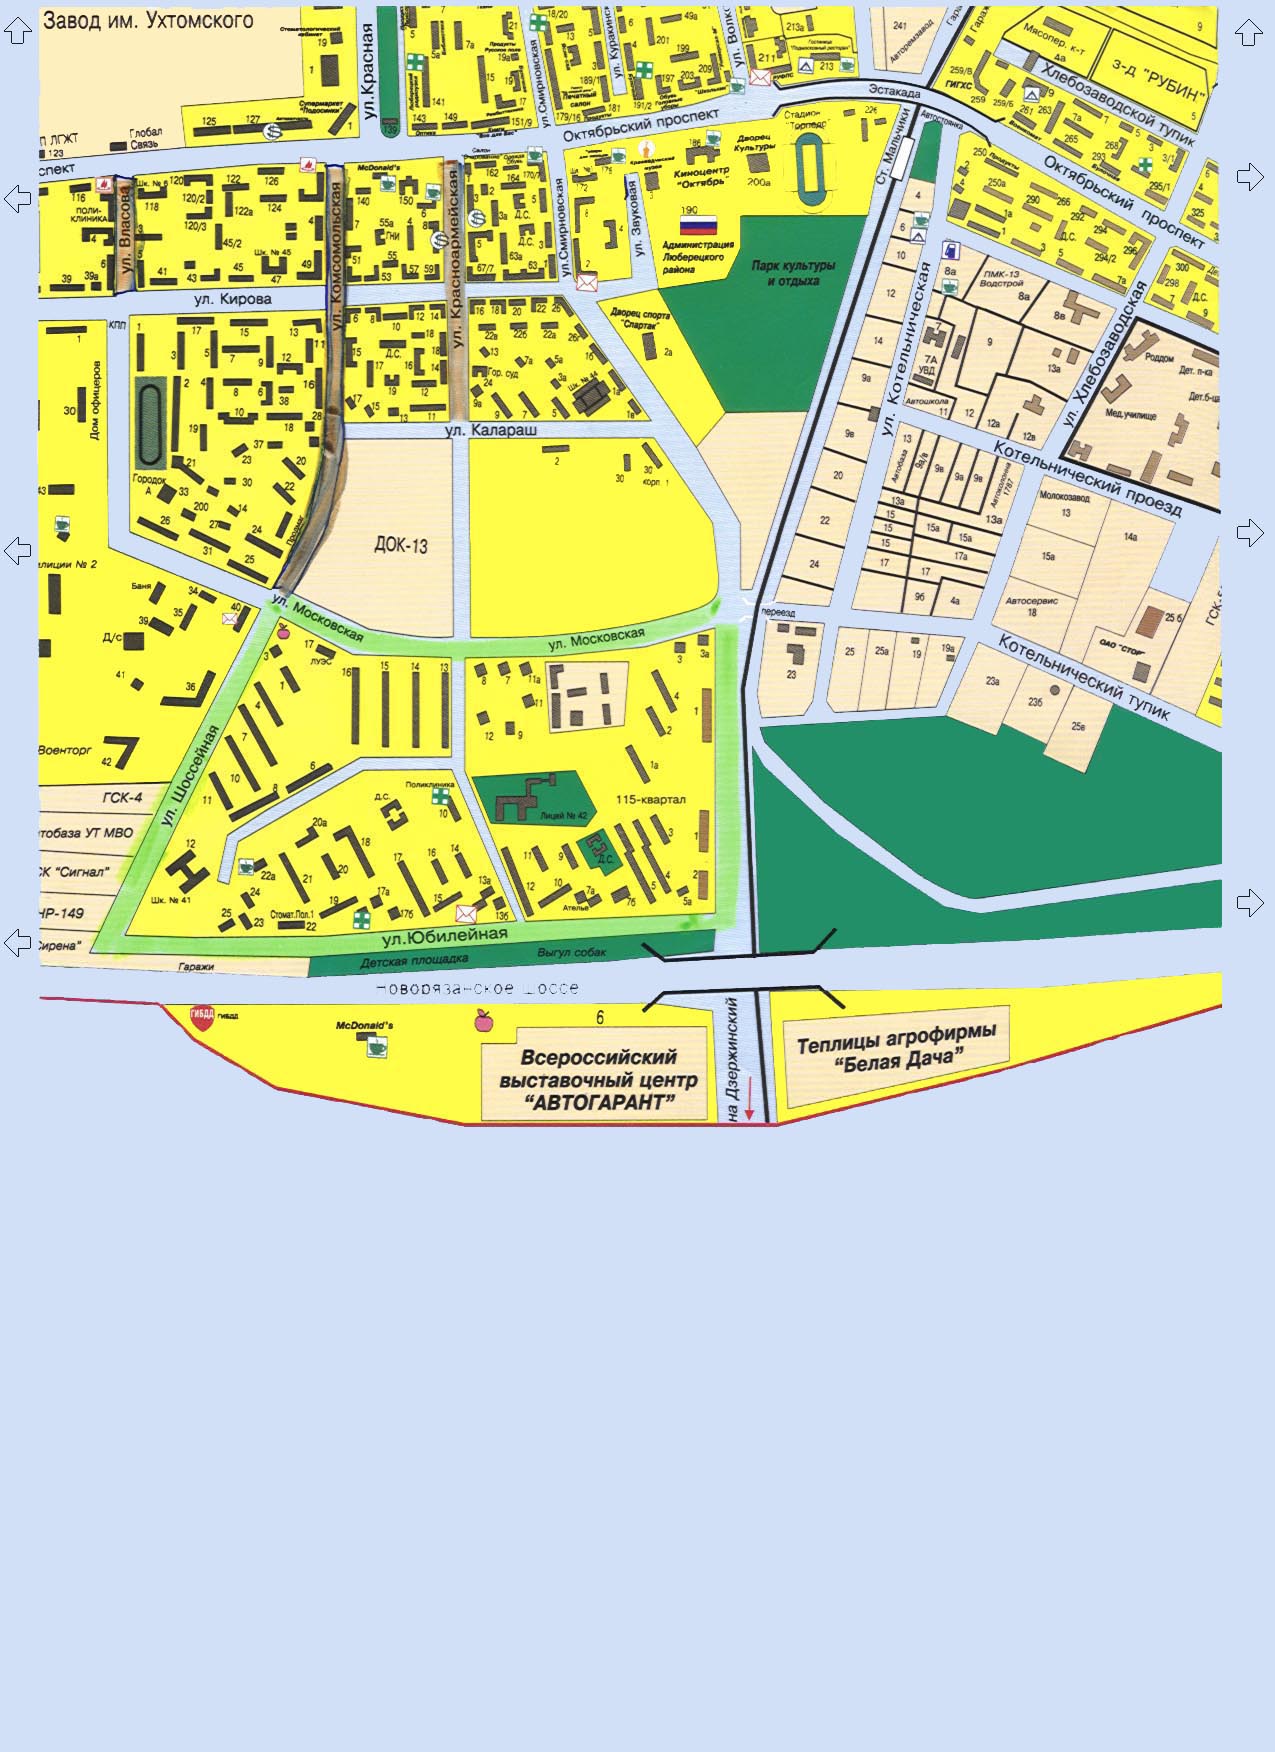 Карта Люберец: центр города, авторынок